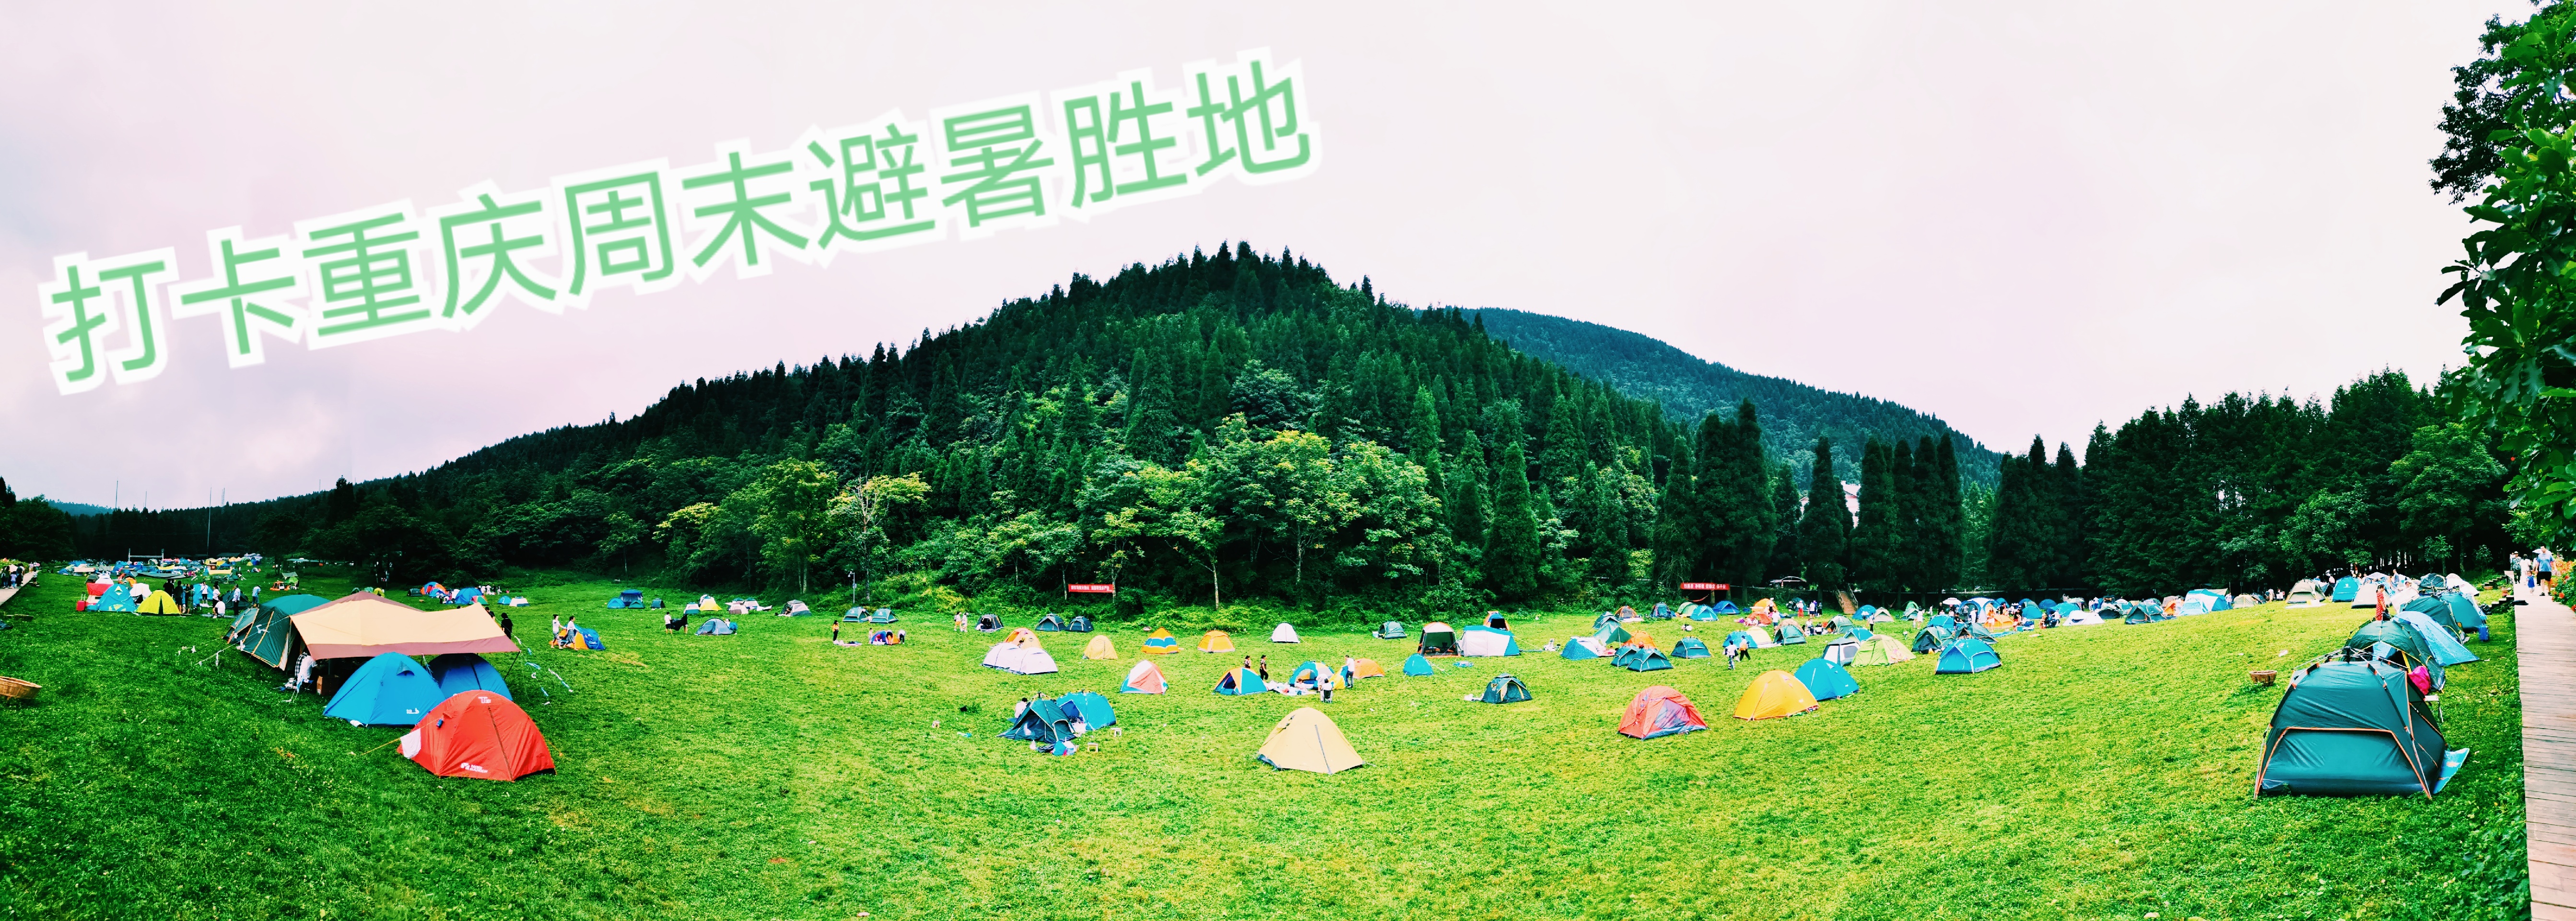 2020莞莞旅游之get重庆周末露营避暑圣地—武陵山